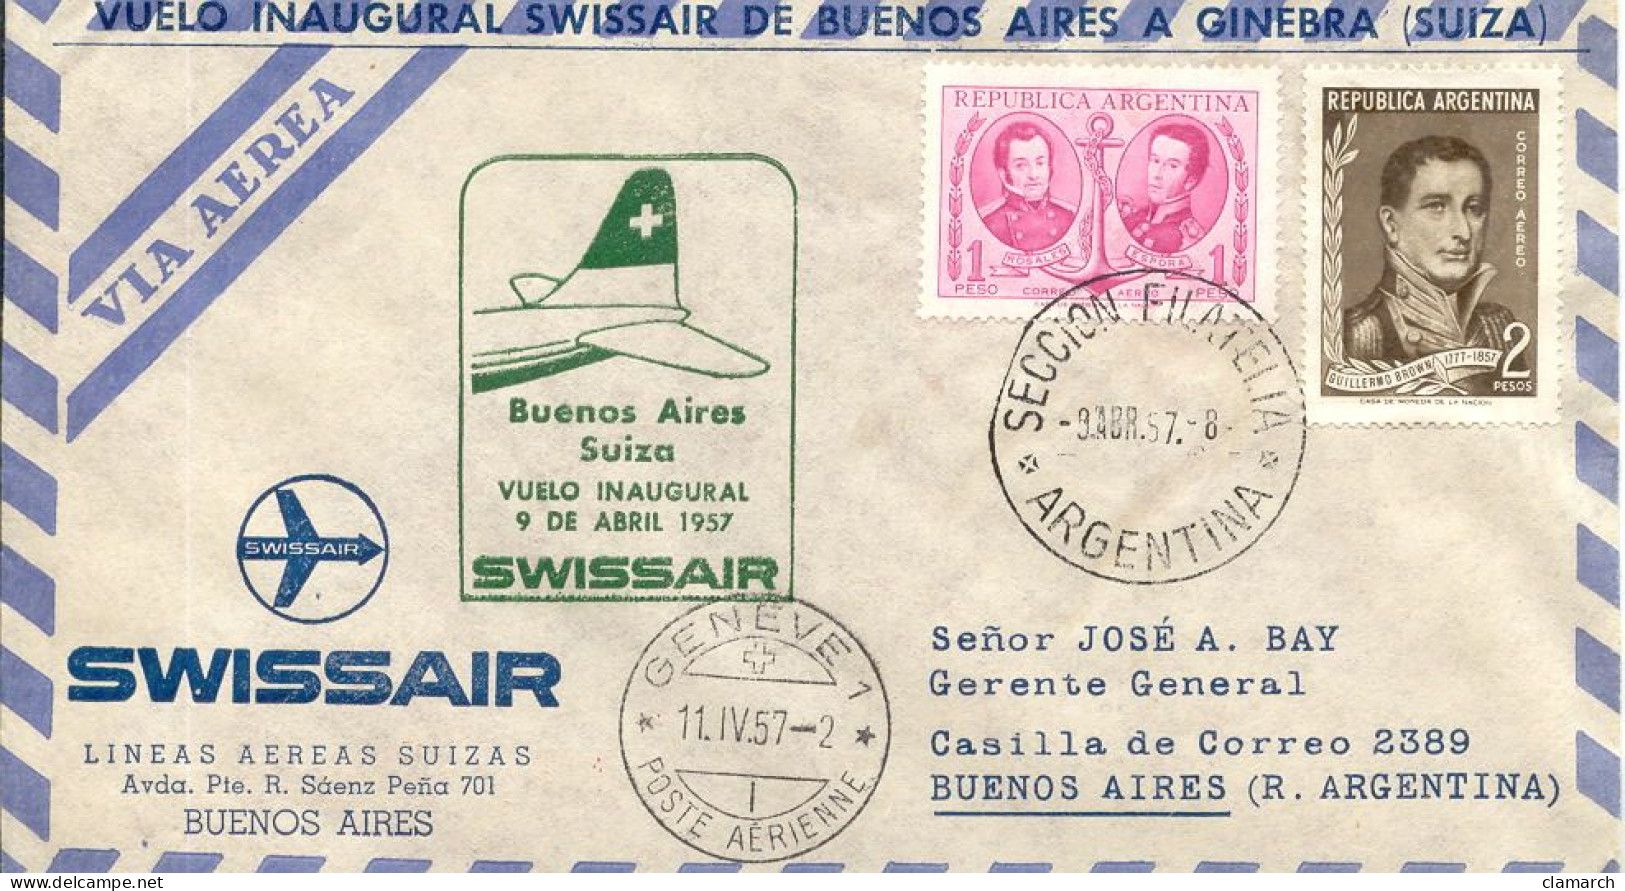 Aérophilatélie-Buenos Aires Suiza Vuelo Inaugural 9 De Abril1957 Par Swissair-cachet Seccion Filateli Du 9.4.57 - Primi Voli